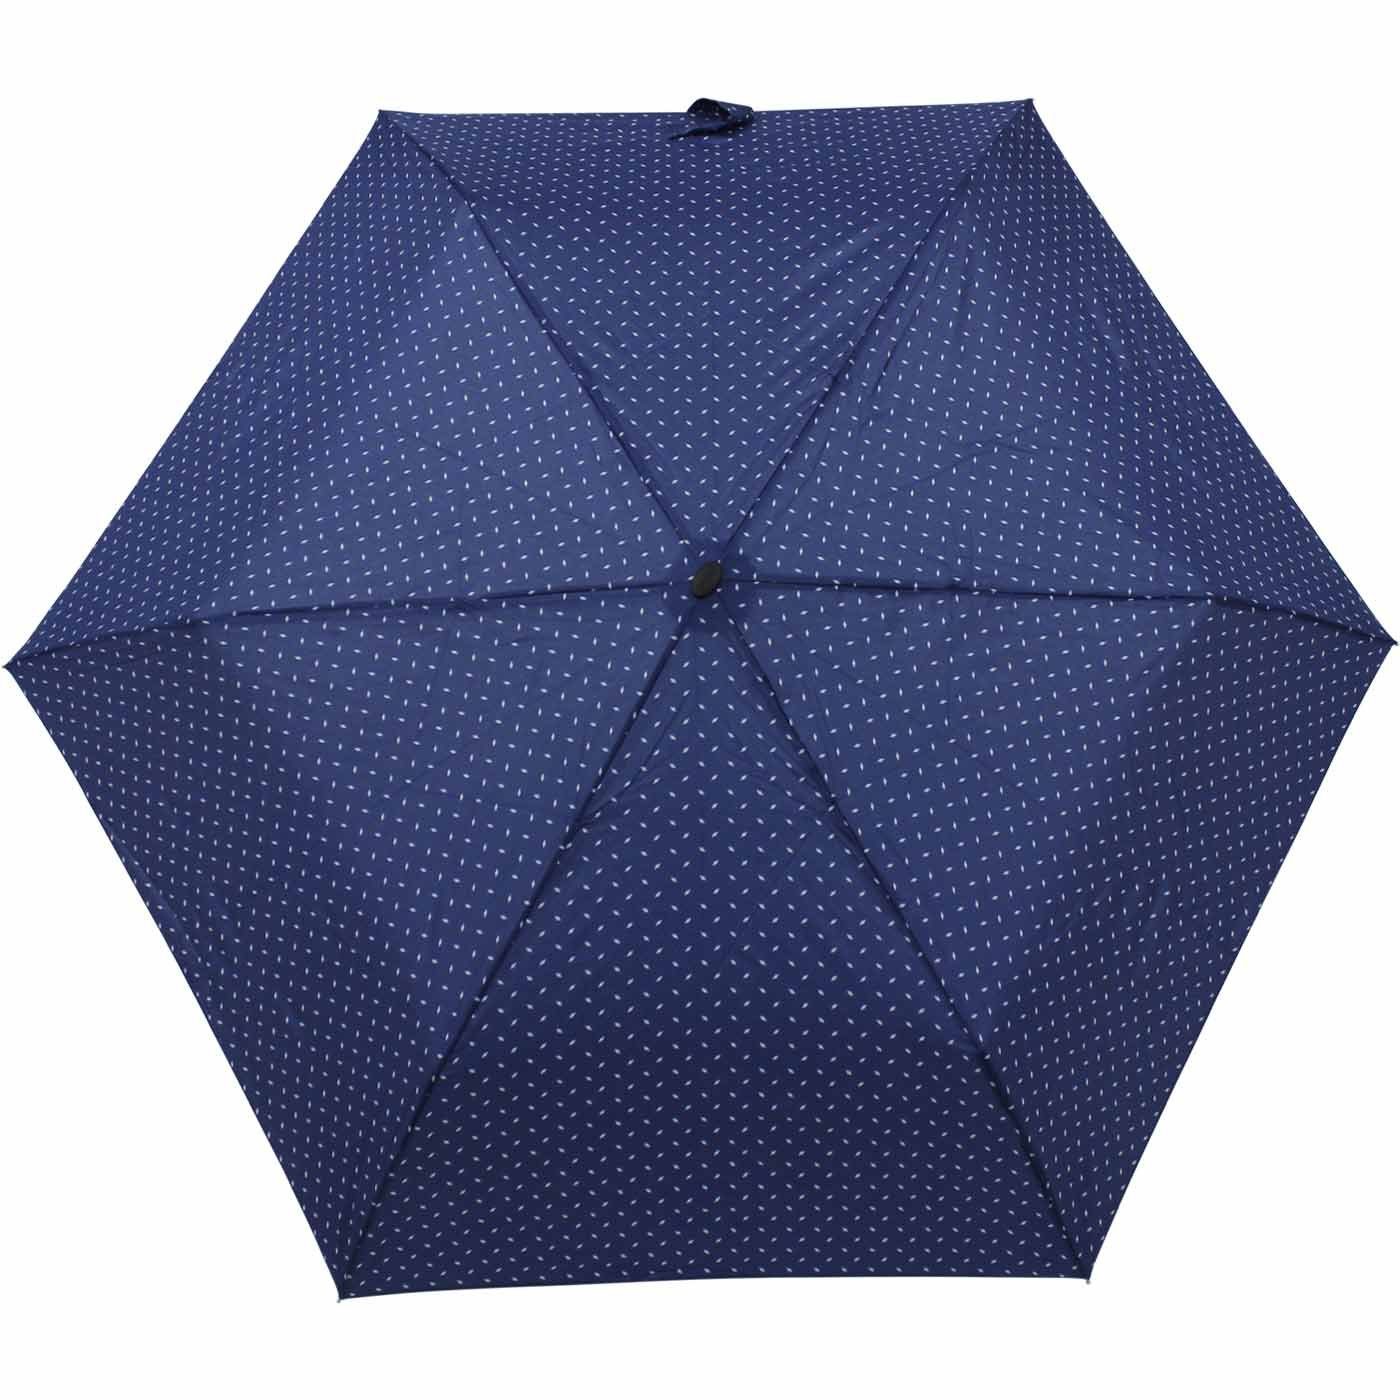 überall ein flacher Begleiter doppler® für und leichter dieser jede blau Platz findet Schirm treue Tasche, Taschenregenschirm